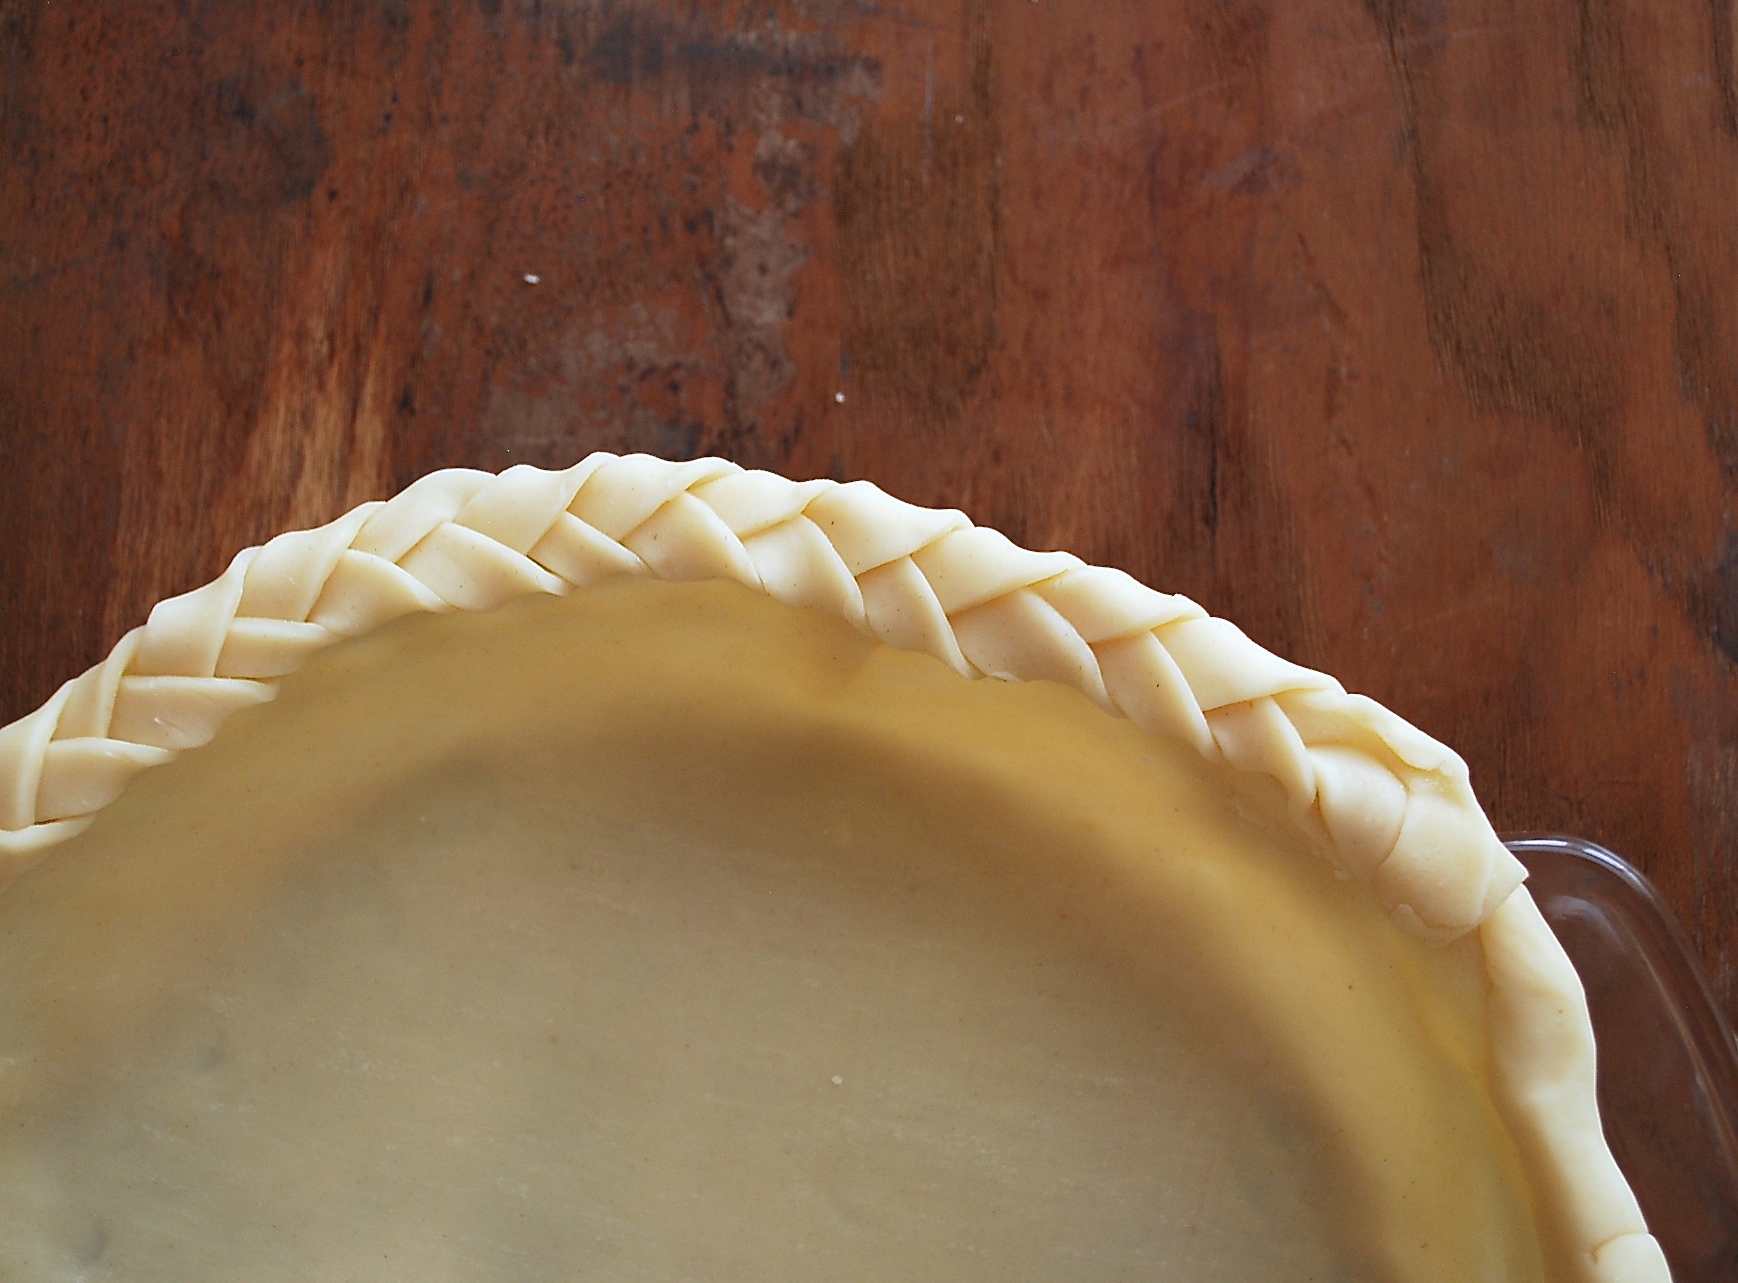 Pie crust basics via @kingarthurflour